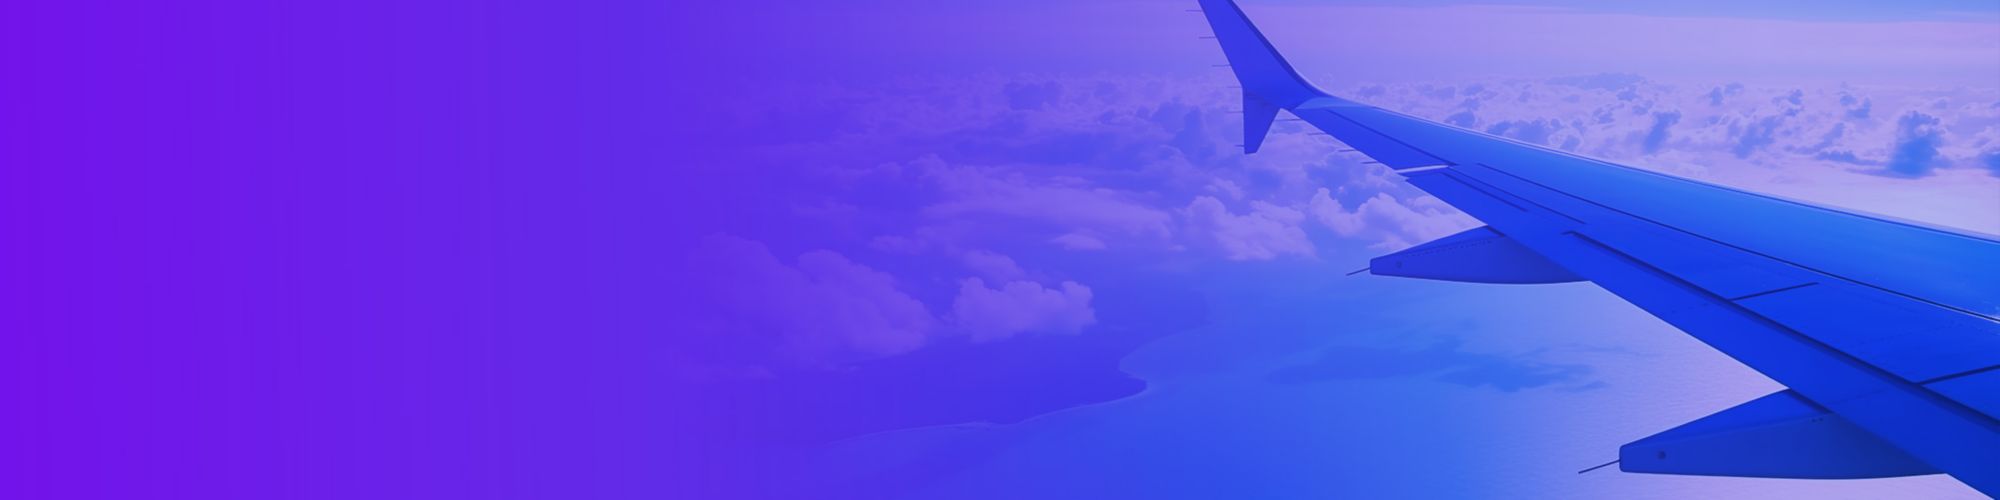 Aile d'avion de ligne survolant la bannière des îles et des nuages